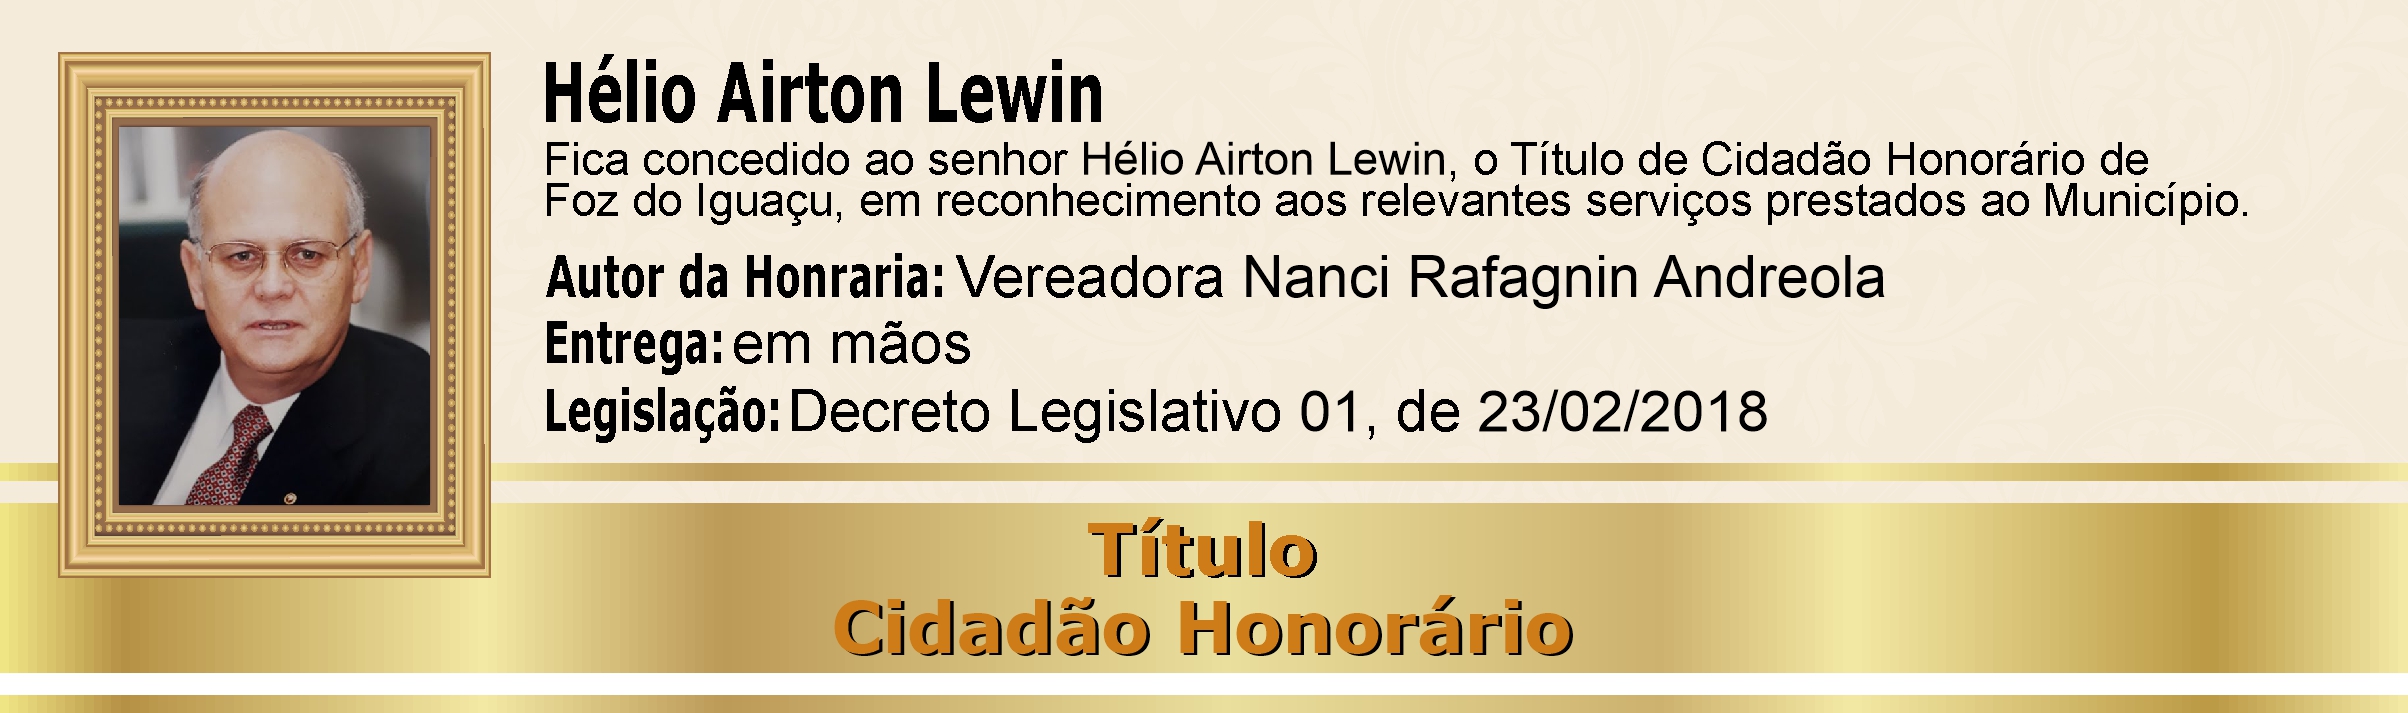 Hélio Airton Lewin